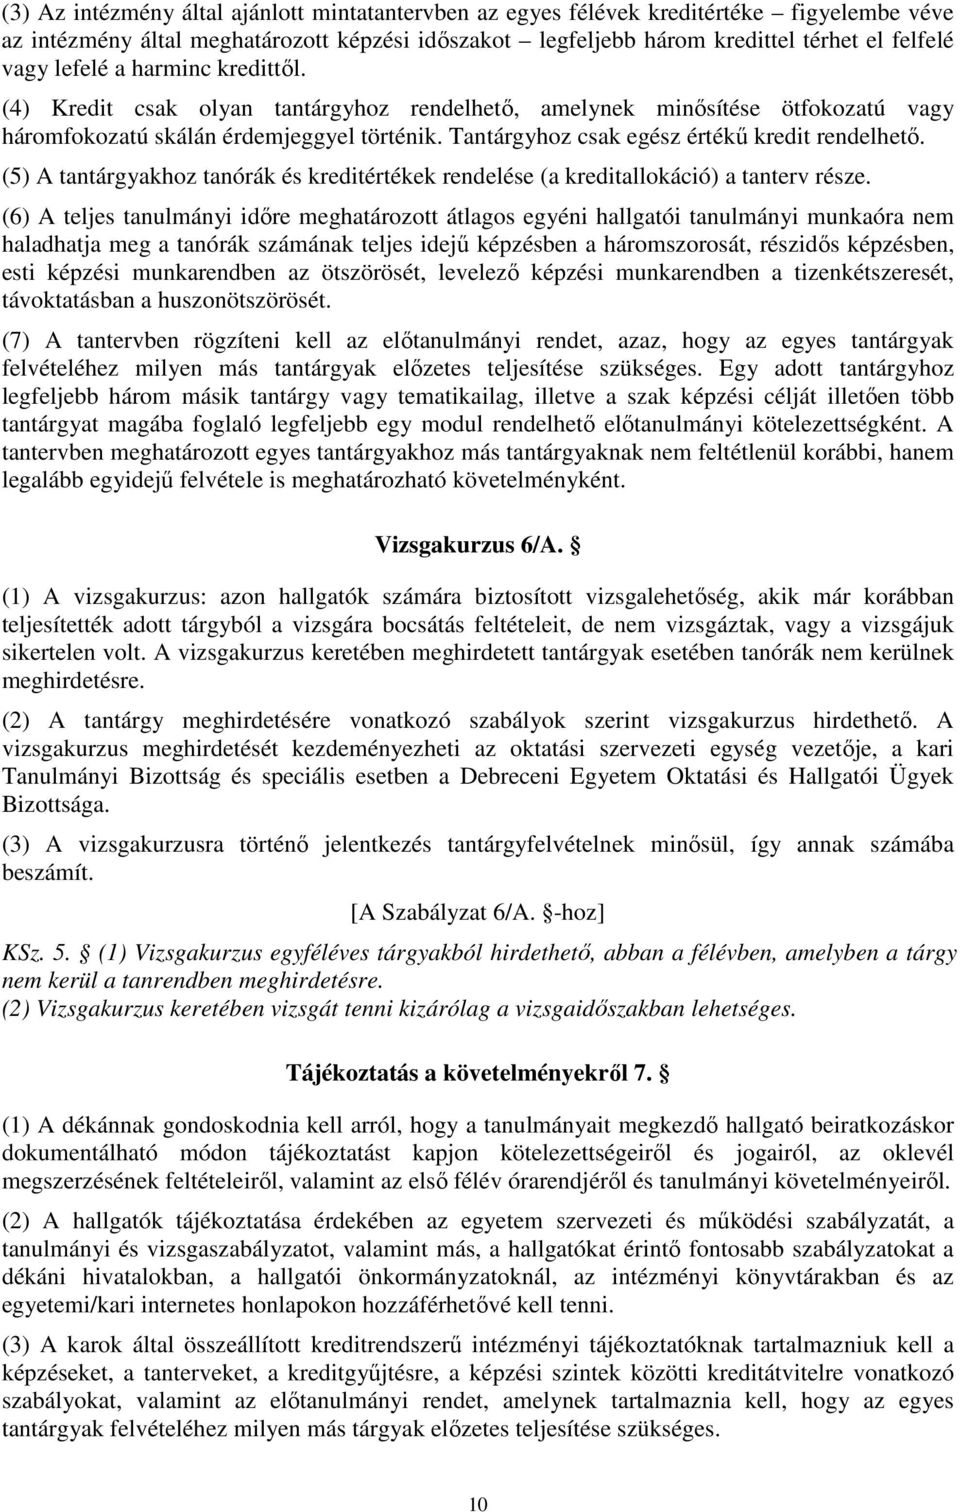 A Debreceni Egyetem Tanulmányi és vizsgaszabályzata, egységes szerkezetben  a DE ÁJK Kari Sajátosságaival (dőlt betűvel szedve) BEVEZETÉS... 2 I. - PDF  Ingyenes letöltés